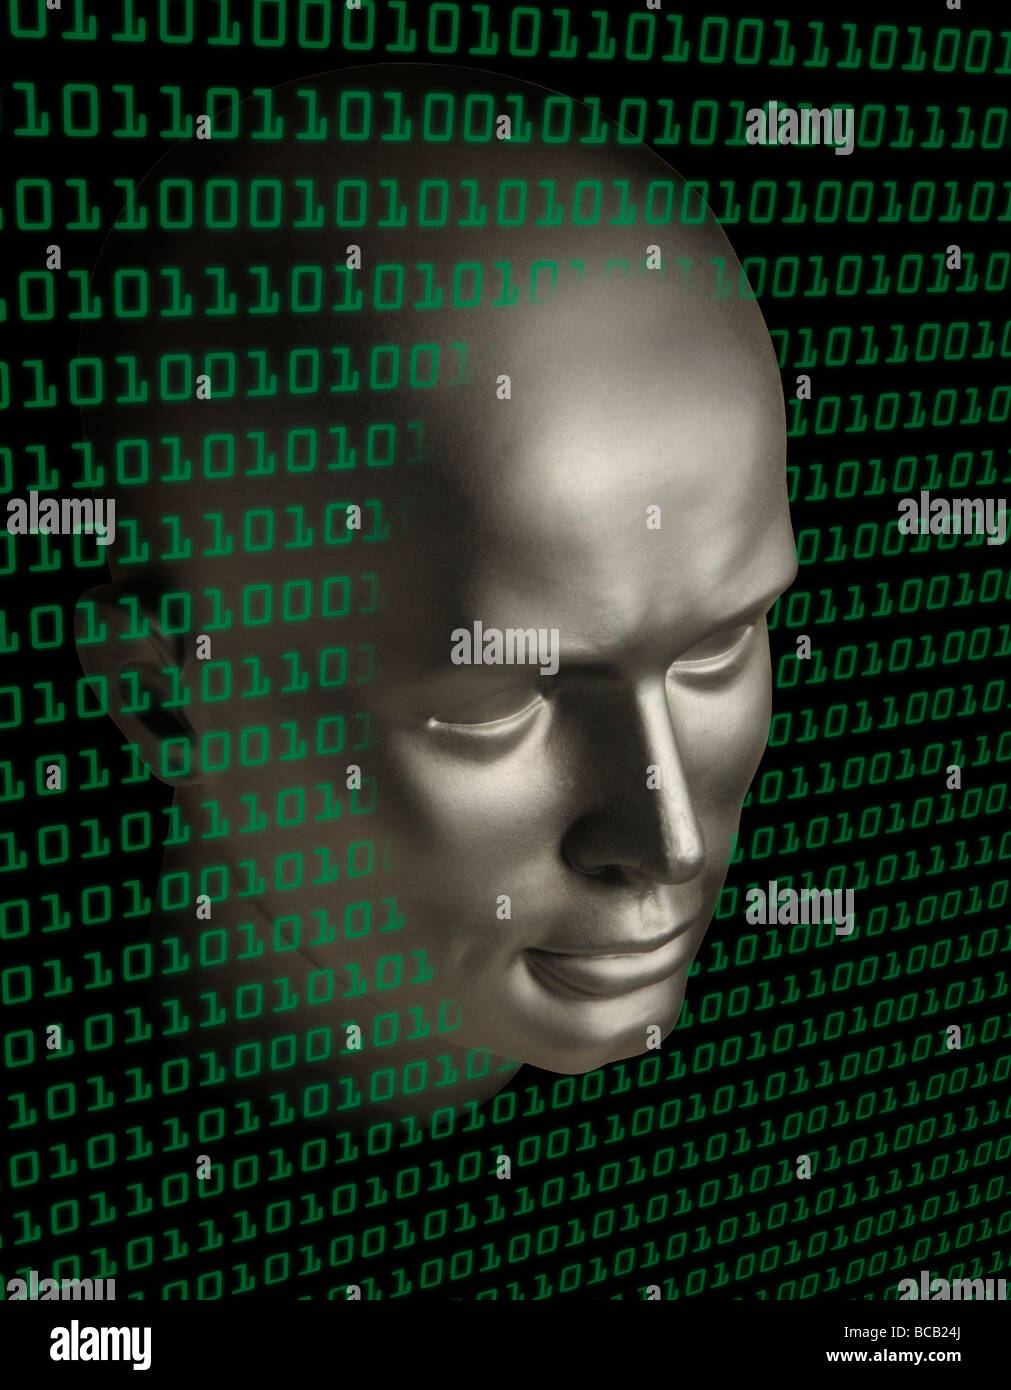 Un robot androide faccia penetrare in una parete del codice binario Foto Stock